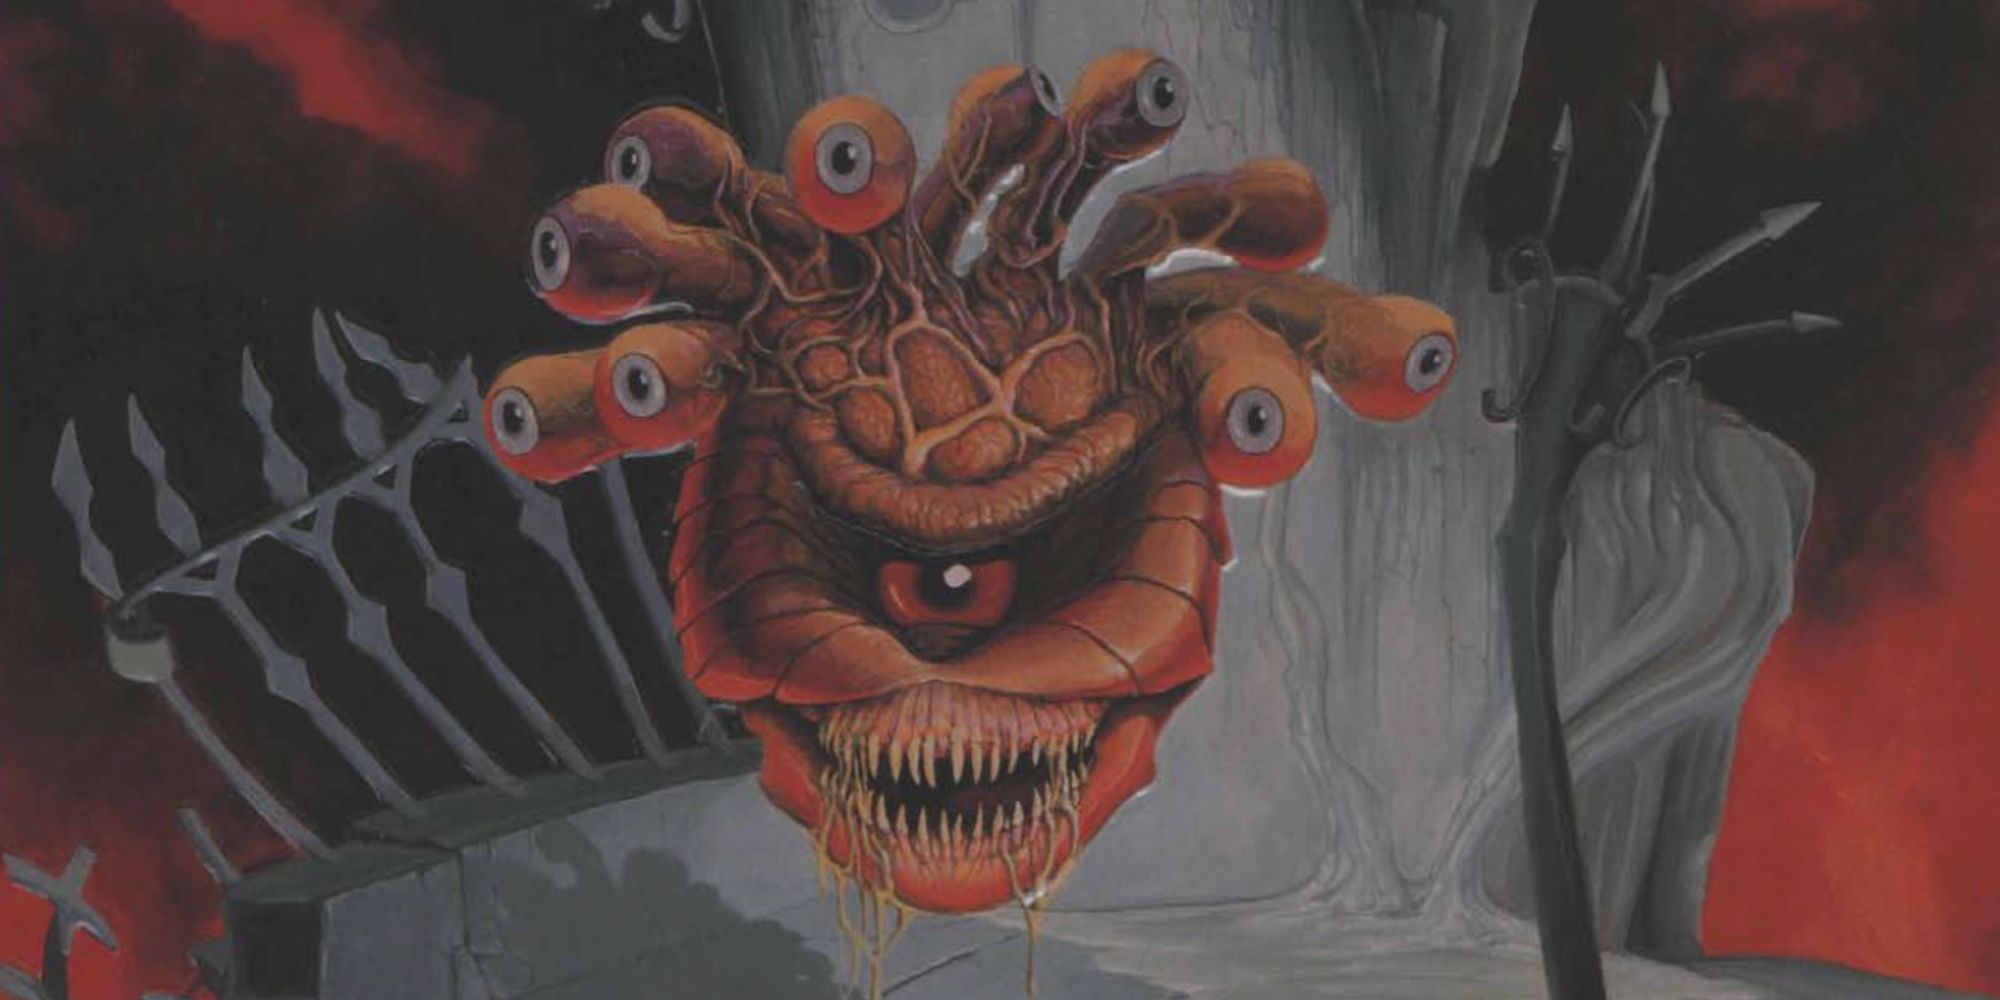 Dungeons & Dragons artwork of a menacing Beholder